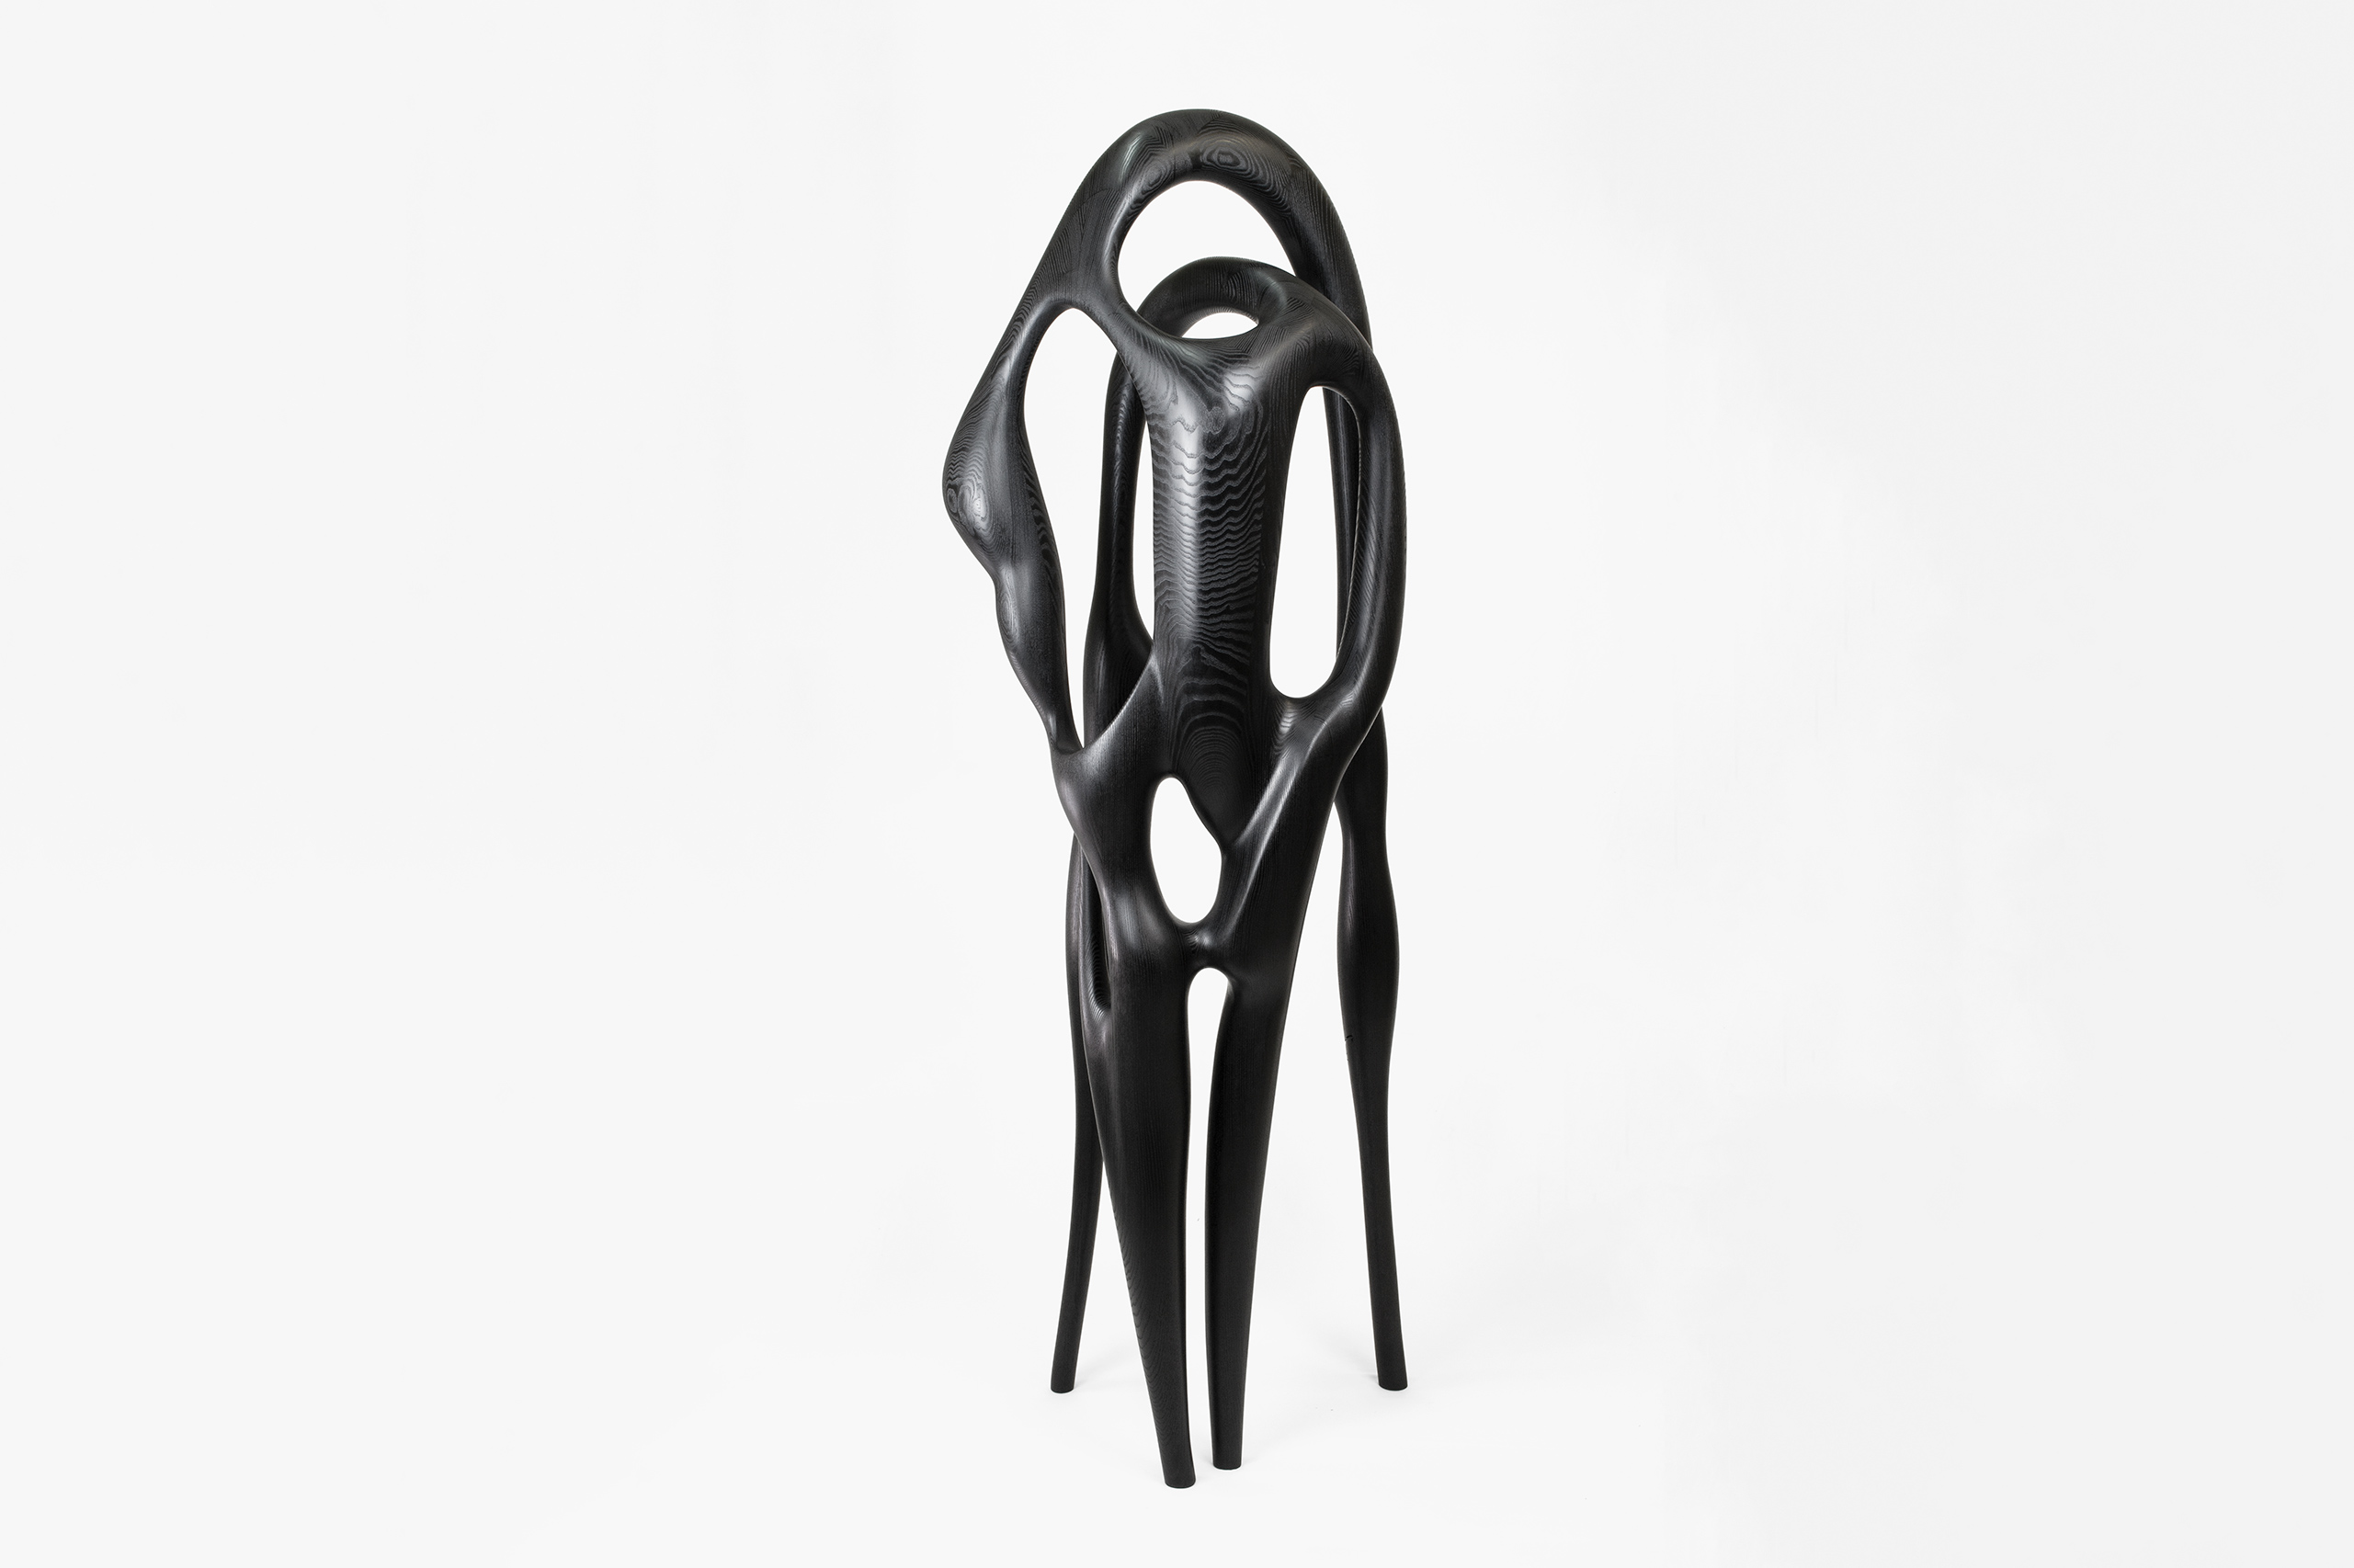 Art - contemporain - galerie d'art - galerie - bois - frêne teinté noir - Maxime Goléo - sculpture - organique - nature - design - designer - artiste